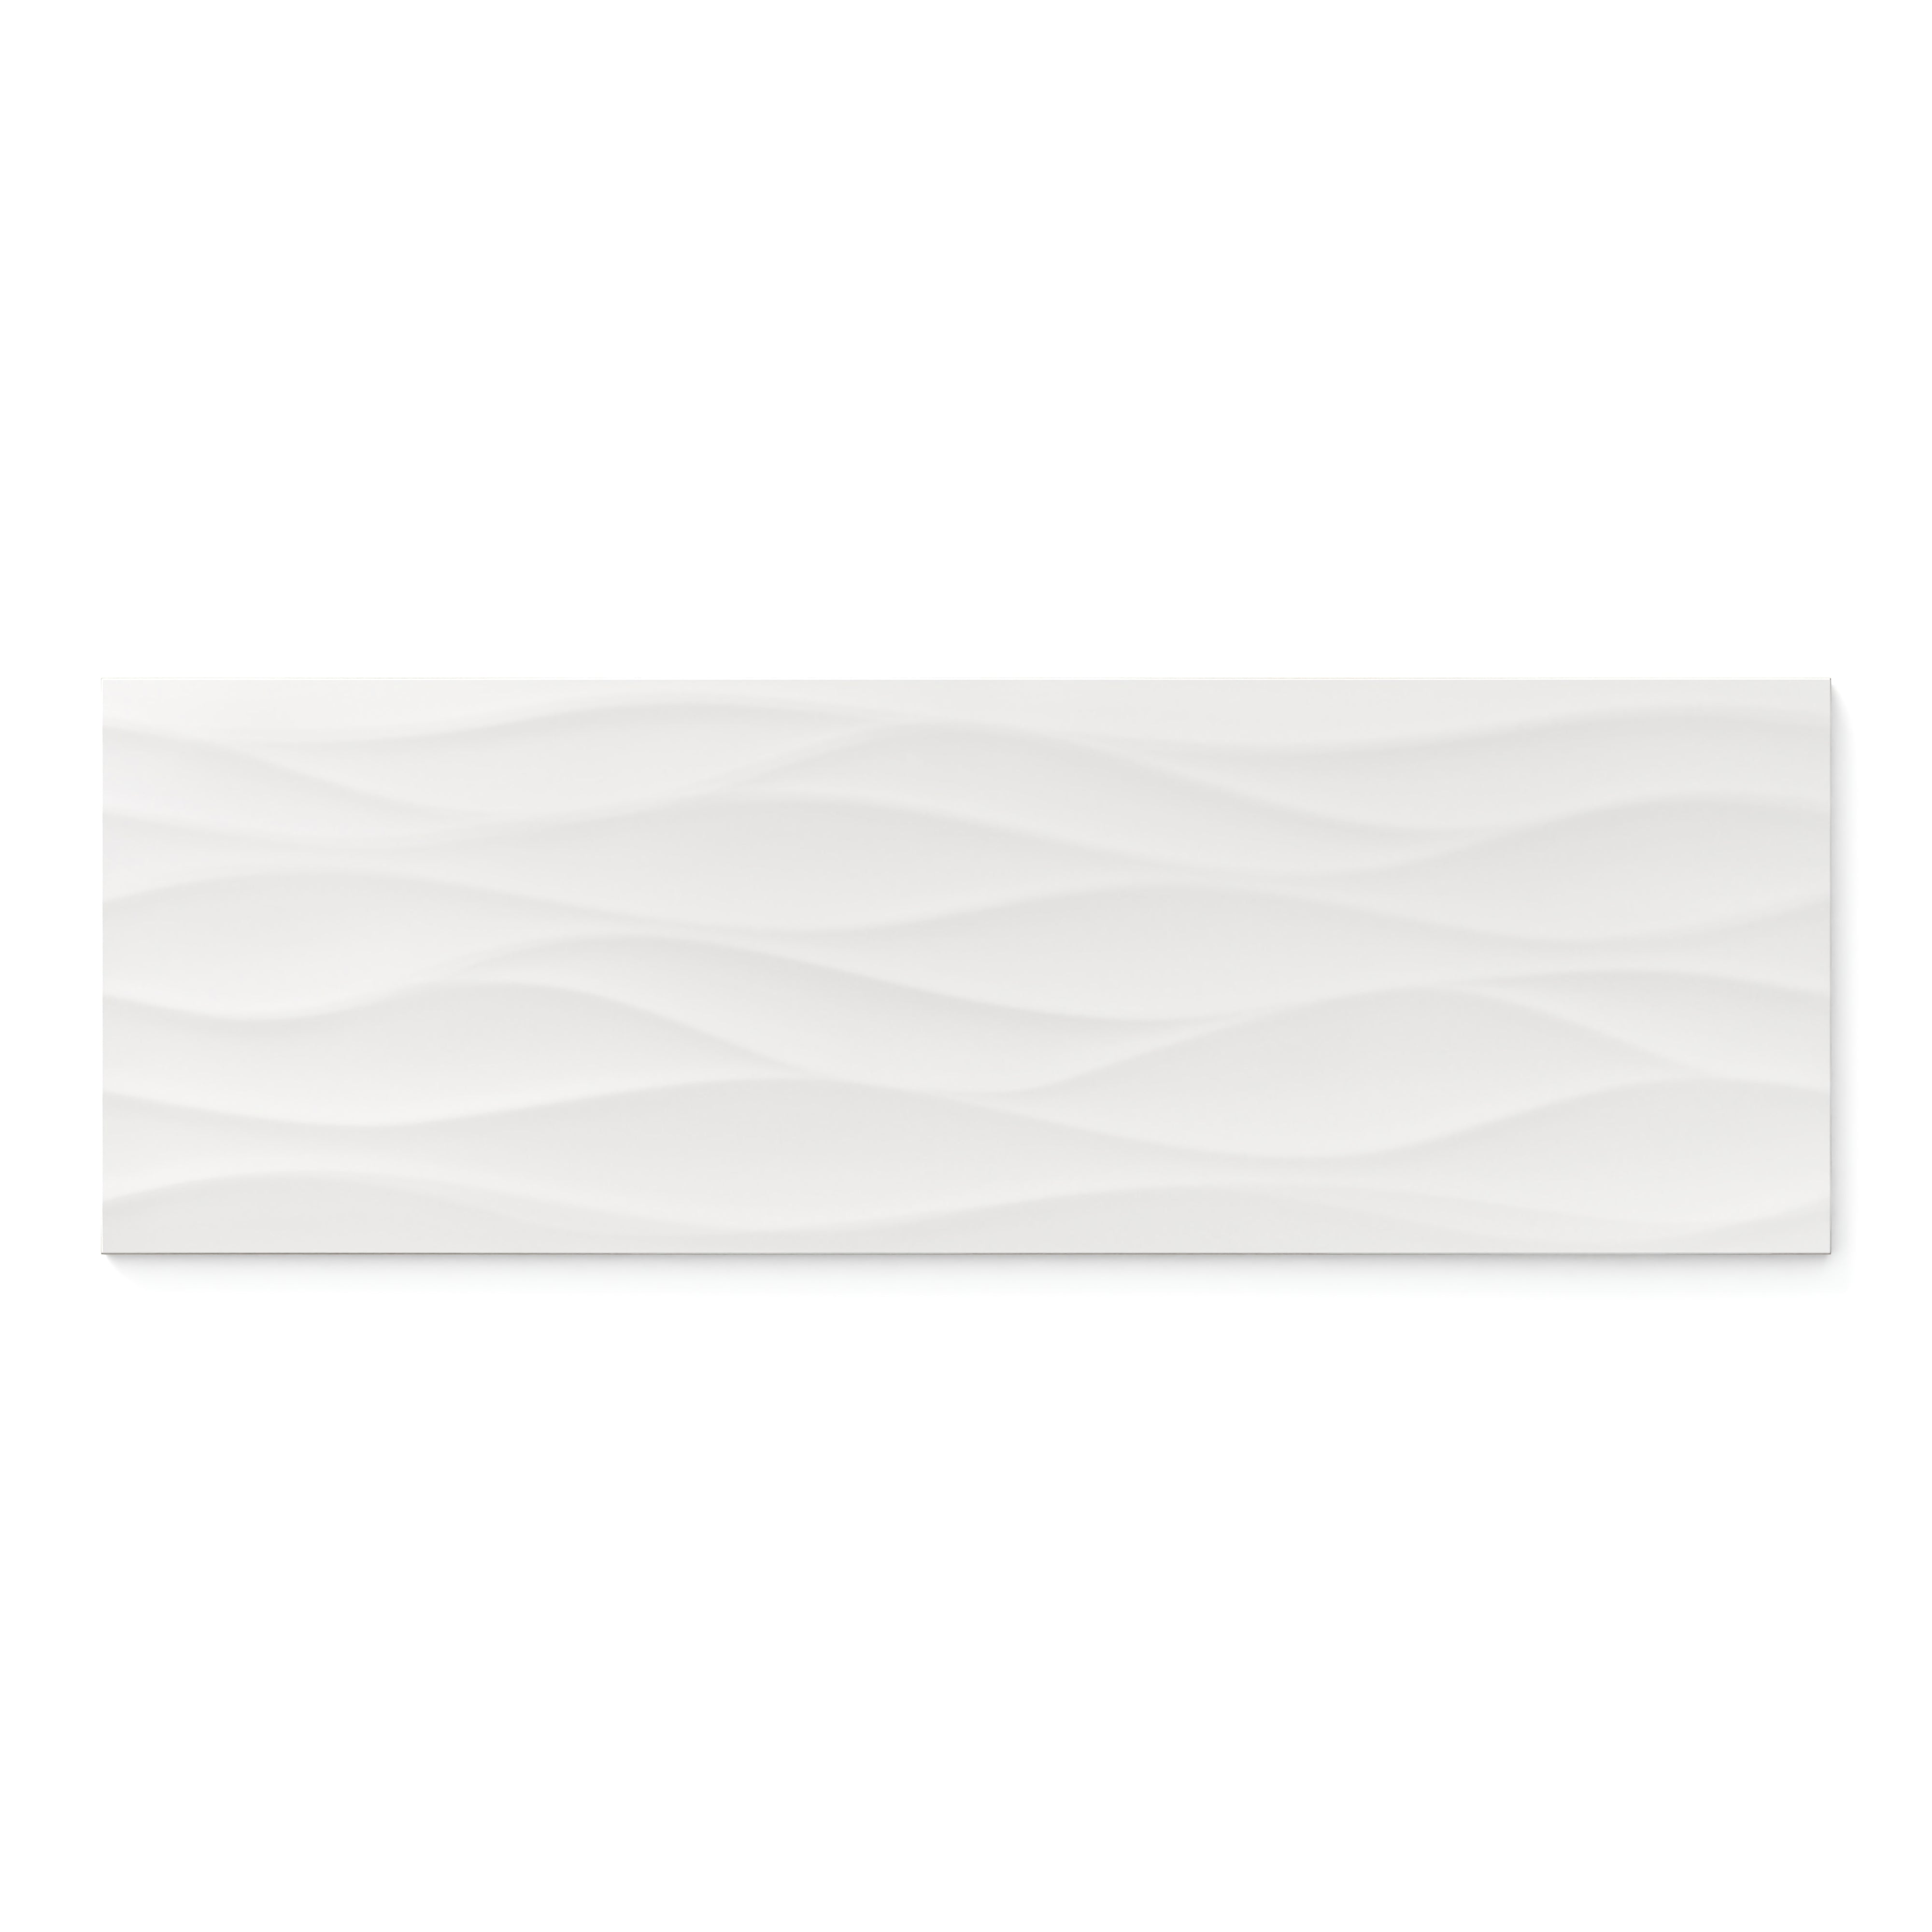 Zayne 12x36 Matte Ceramic Tile in Waves